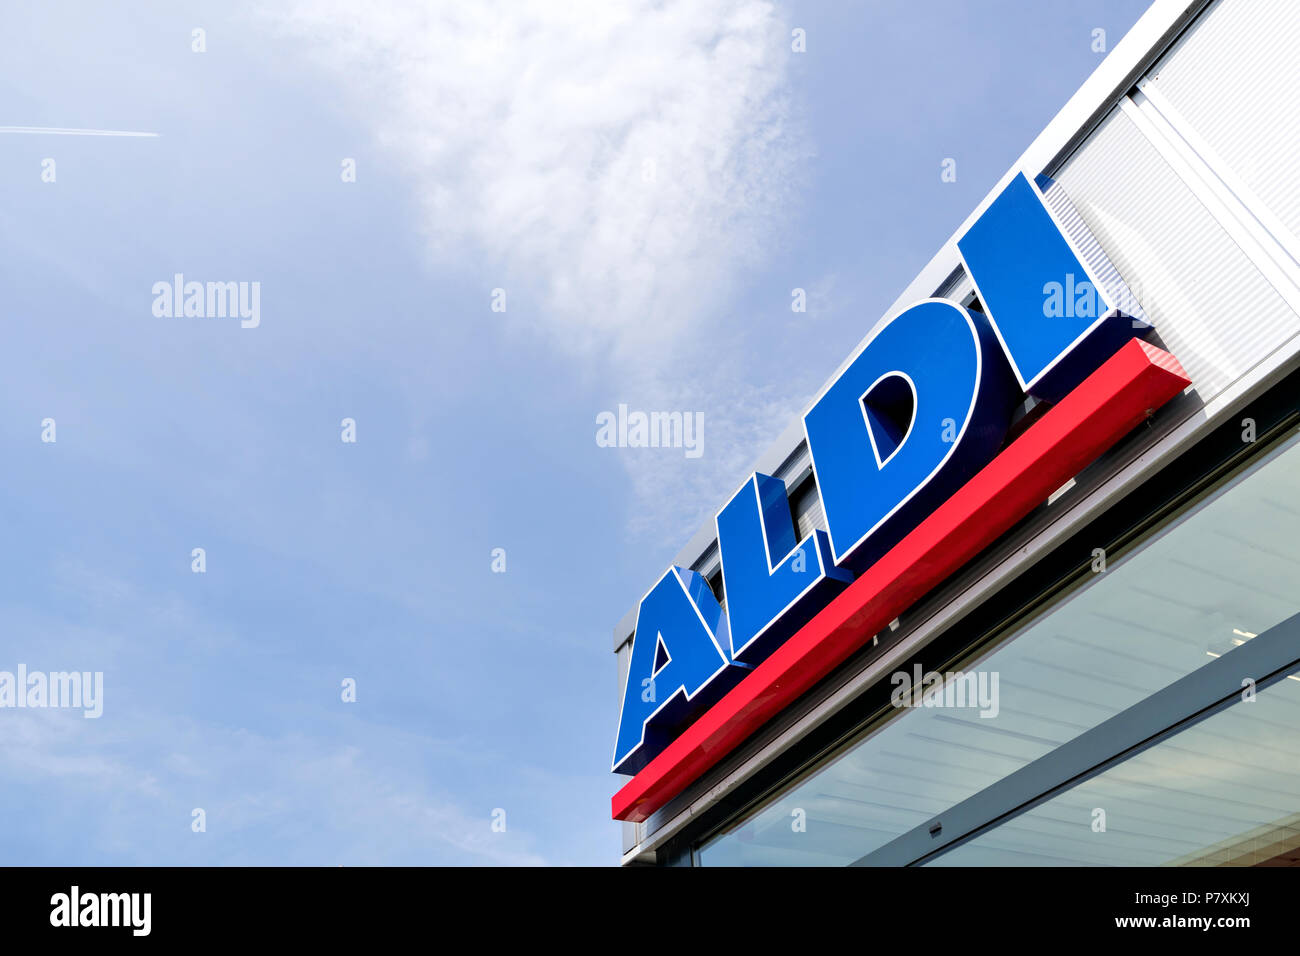 Aldi scritte presso la filiale. Aldi è un azienda leader a livello globale di sconto catena di supermercati con quasi 10.000 negozi in 18 paesi. Foto Stock